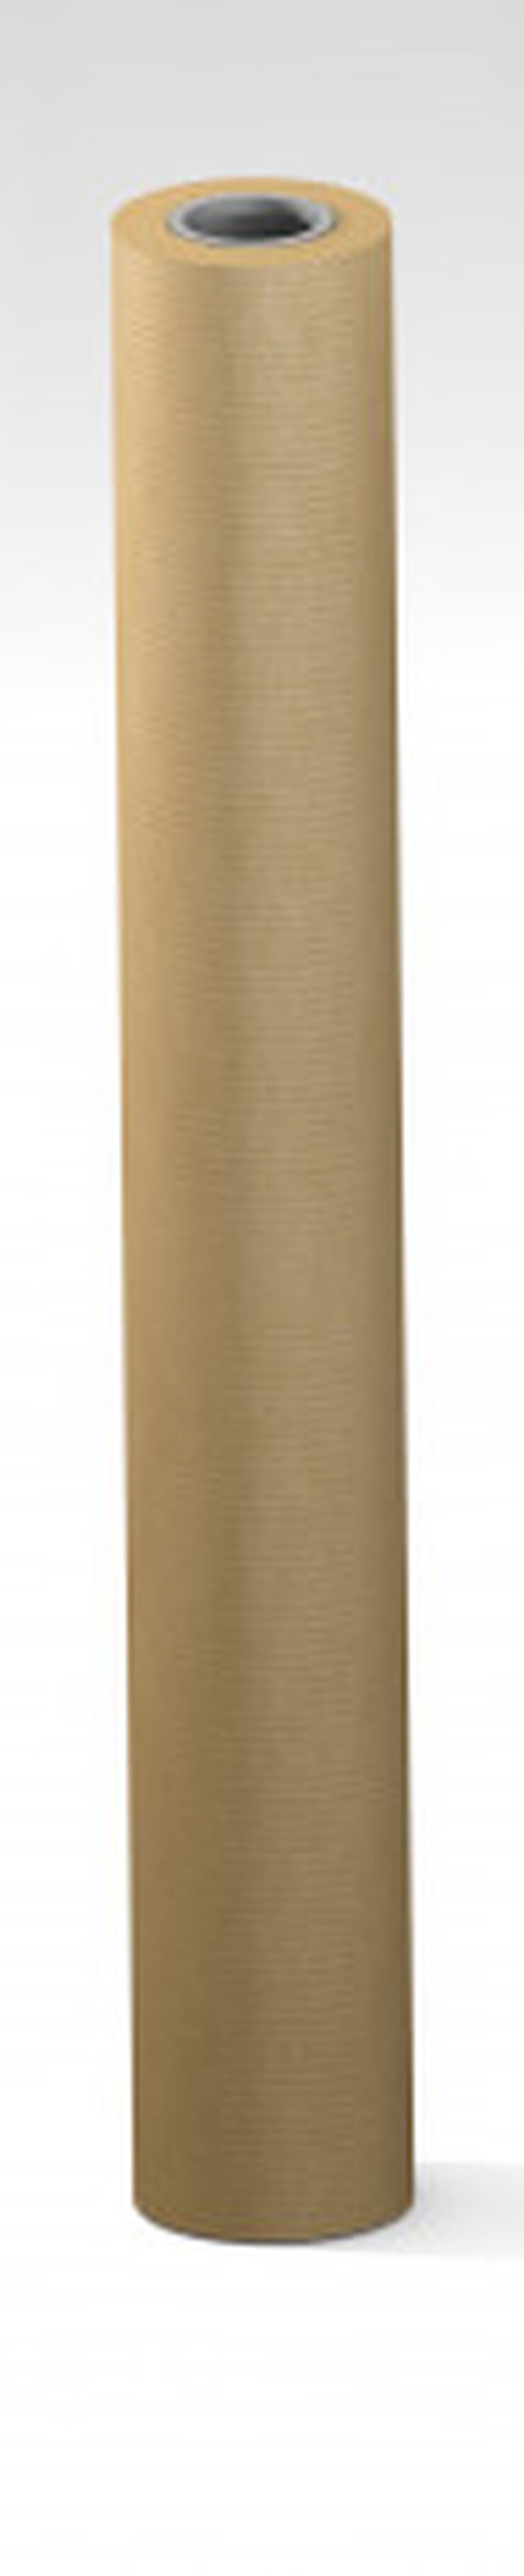 Bobina Paper embalar Sadipal color natural 70 g 50 m